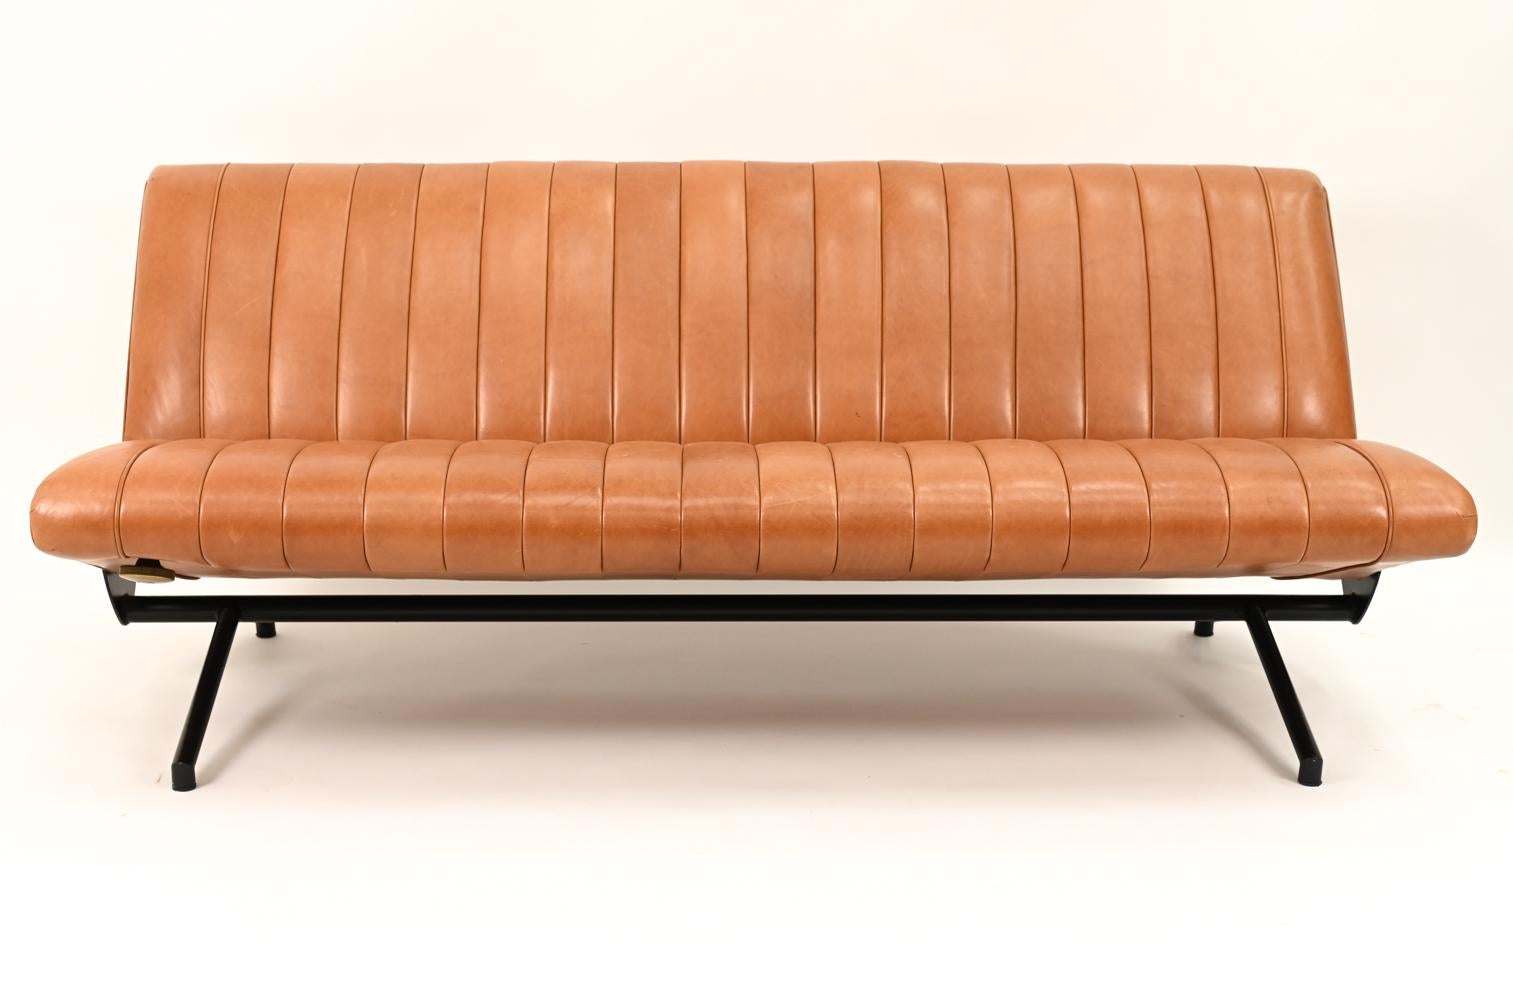 Ejemplo icónico del diseño italiano de mediados de siglo, reproducido continuamente por su reconocida combinación de estilo y funcionalidad, este sofá-cama reclinable totalmente ajustable fue diseñado por Osvaldo Borsani para Tecno en 1995. El sofá